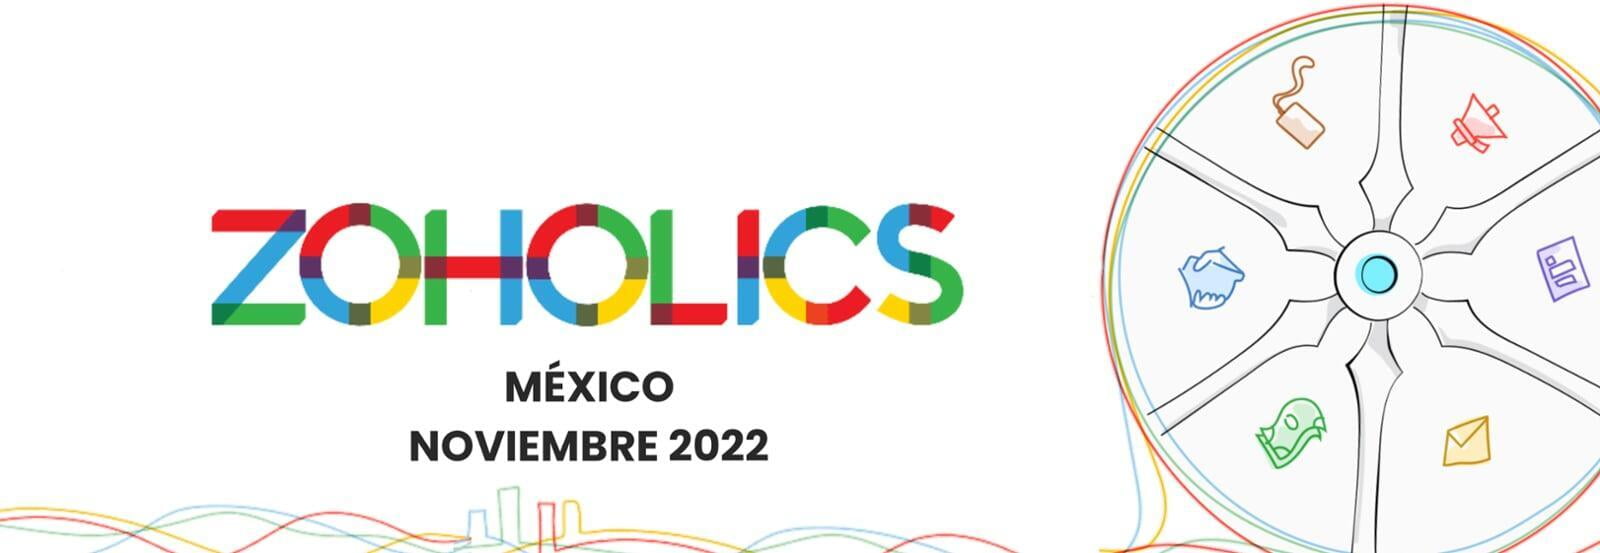 Zoholics 2022 Partner Digital